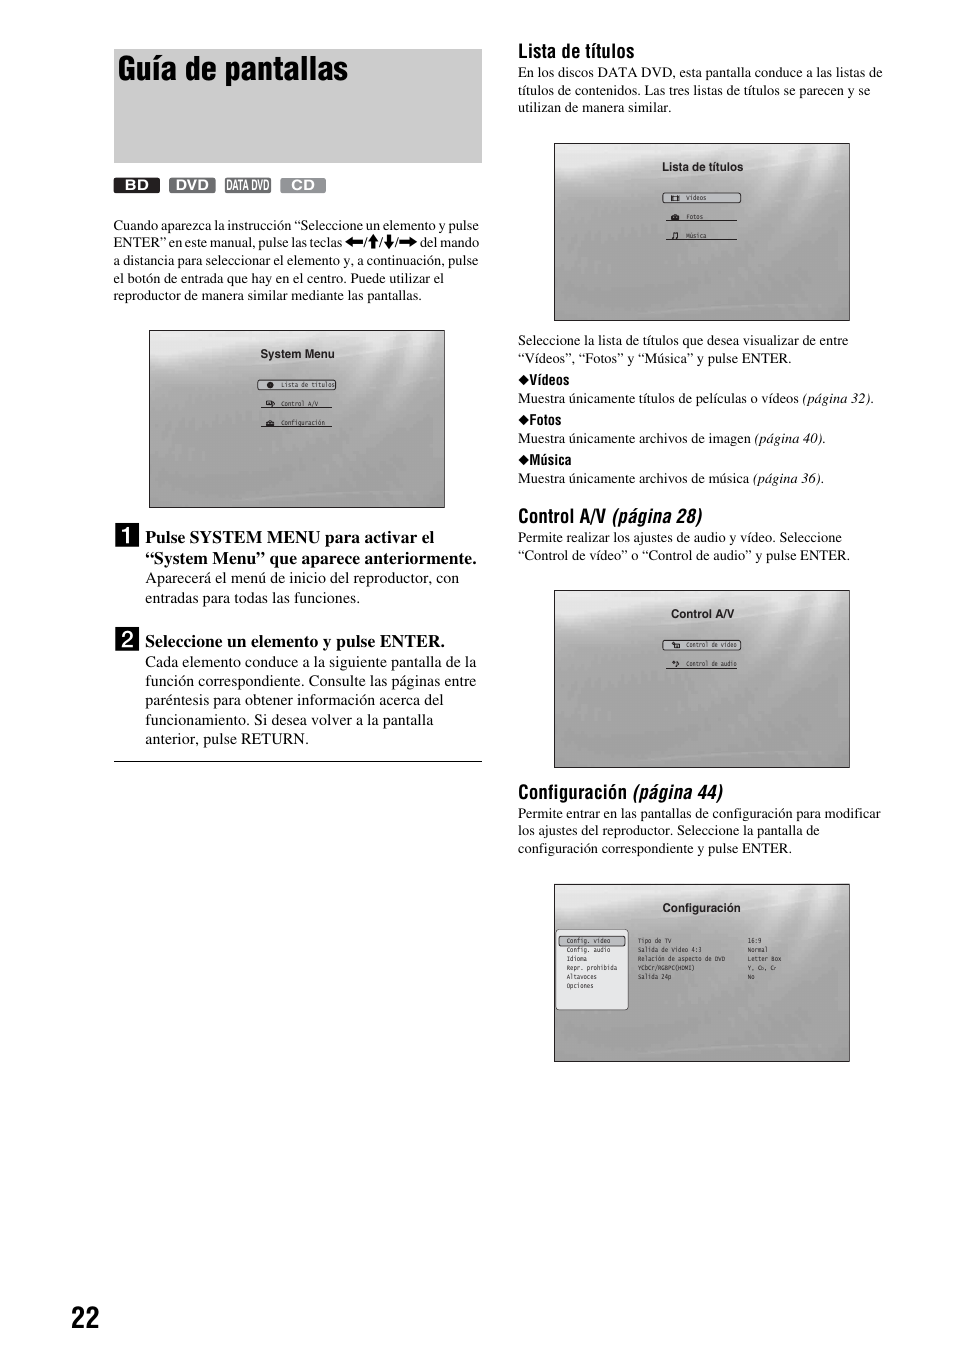 Guía de pantallas, Lista de títulos, Control a/v (página 28) | Configuración (página 44), Seleccione un elemento y pulse enter | Sony BDP-S300 Manual del usuario | Página 22 / 63